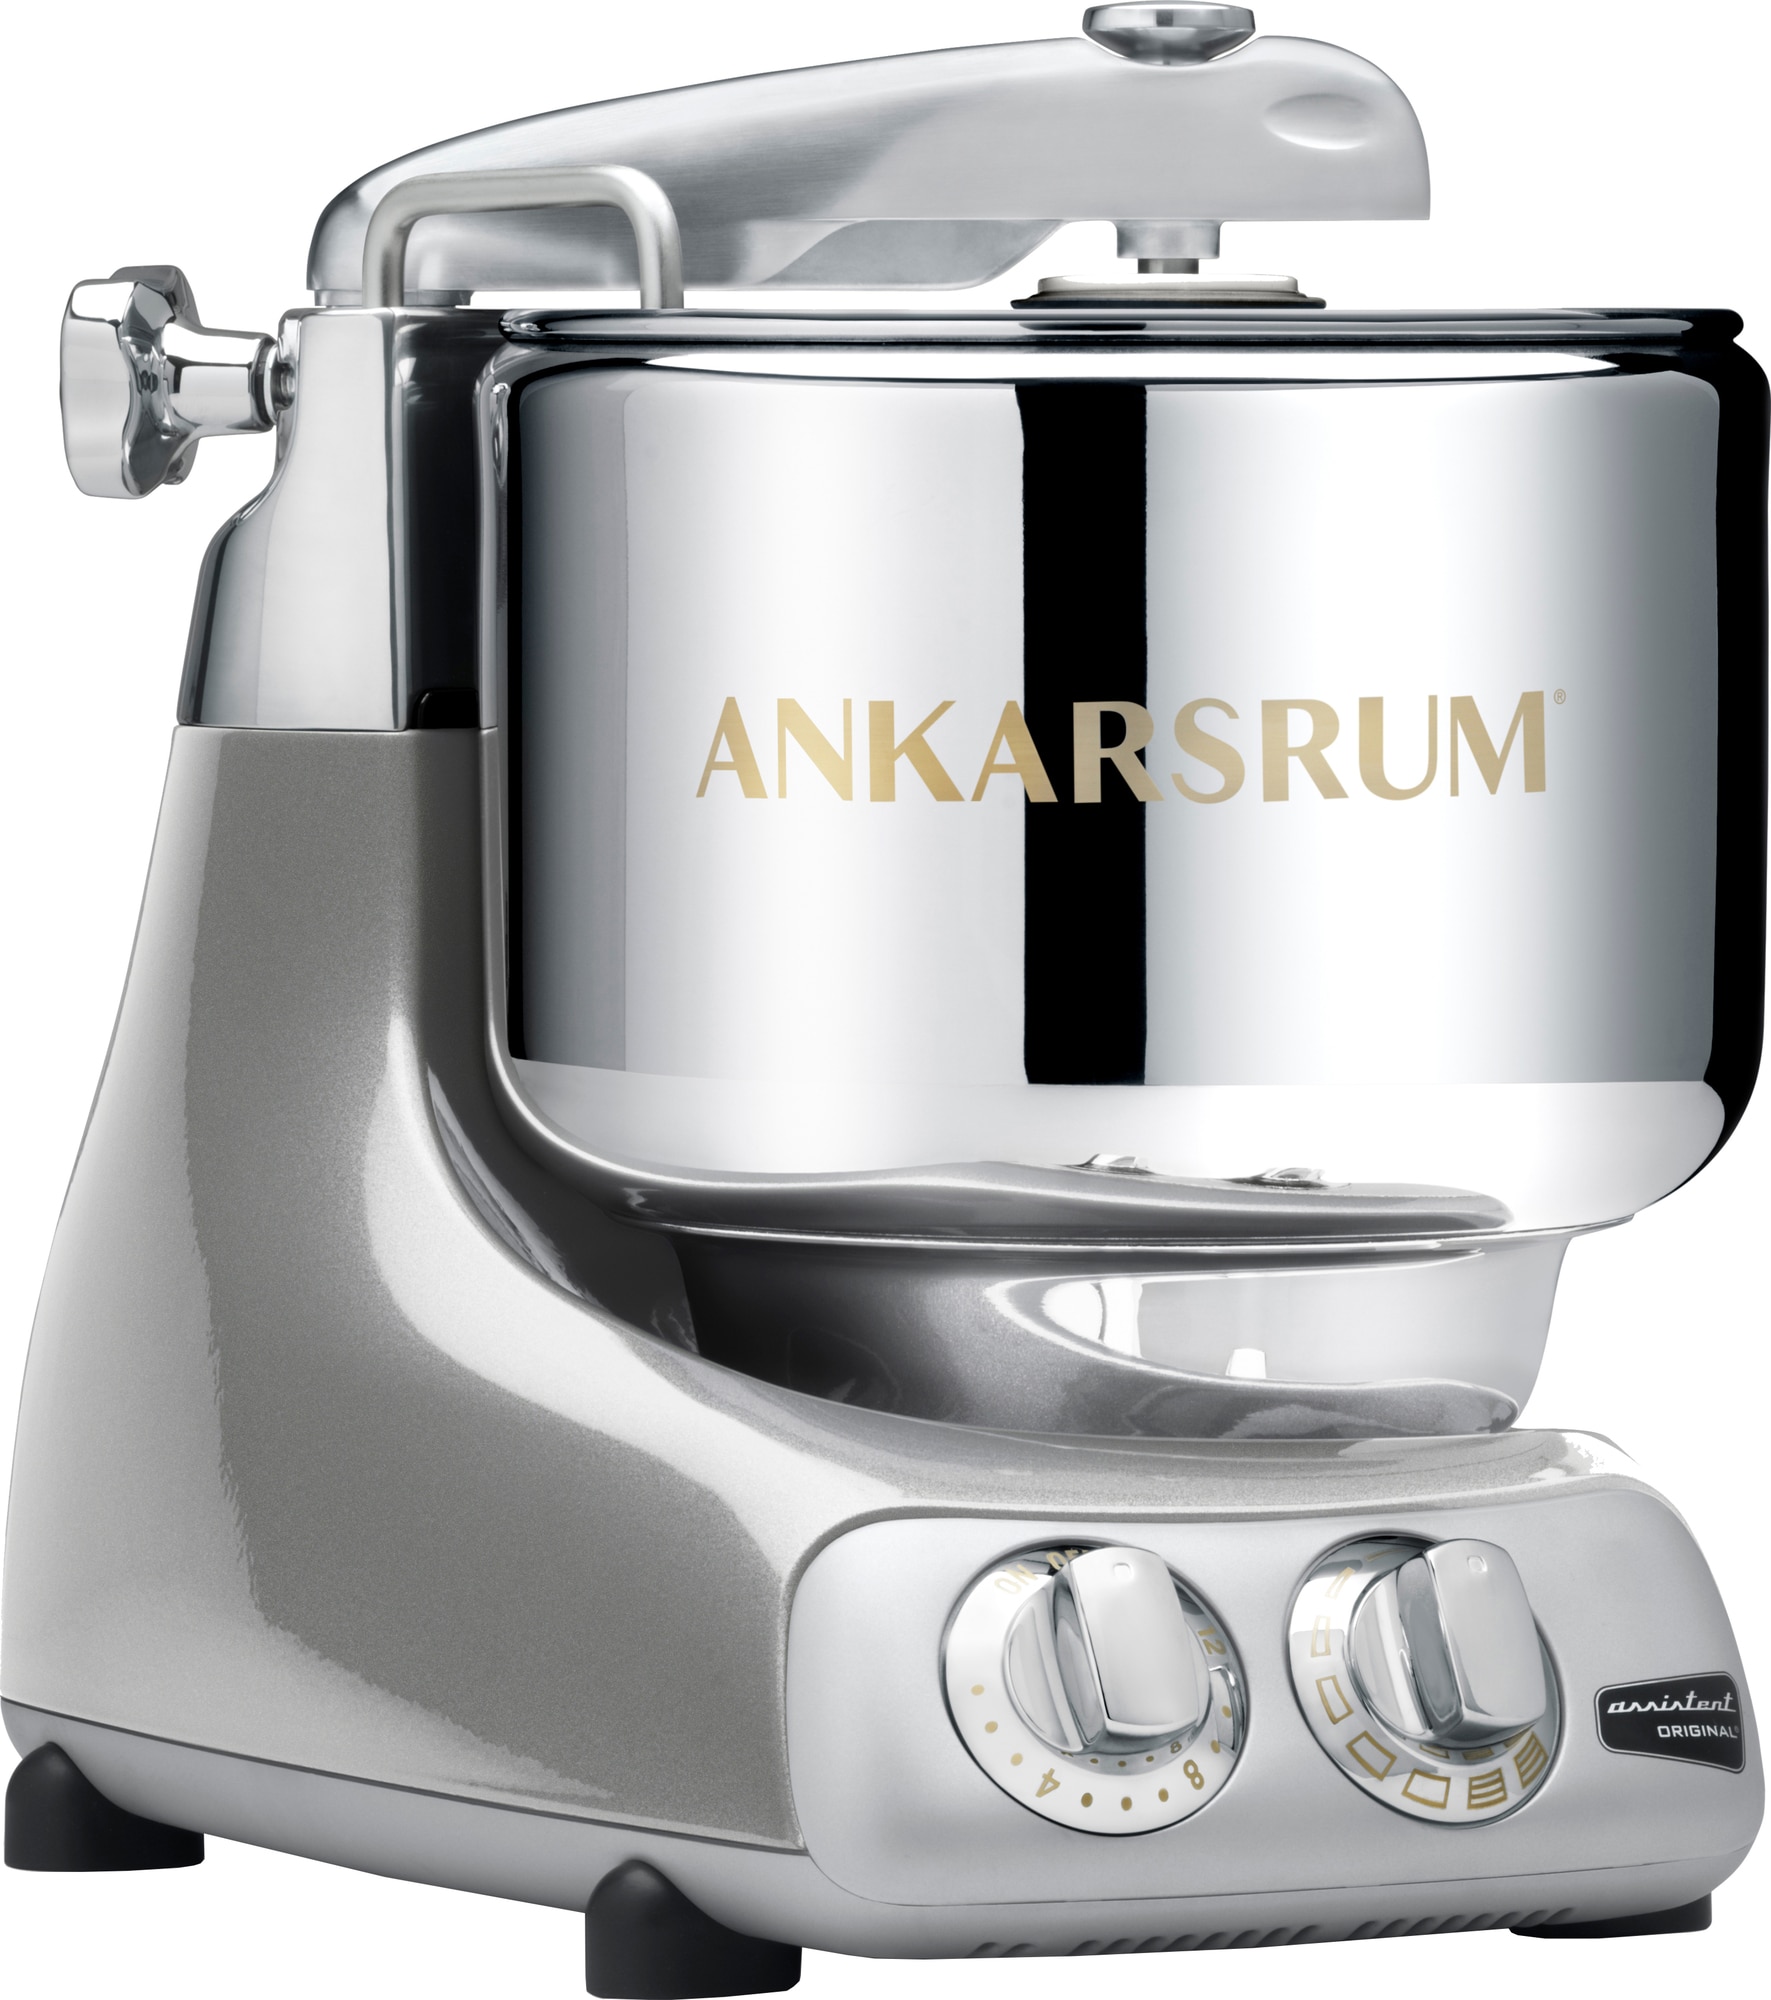 Ankarsrum Jubilee Silver køkkenmaskine AKM6230 (sølv)